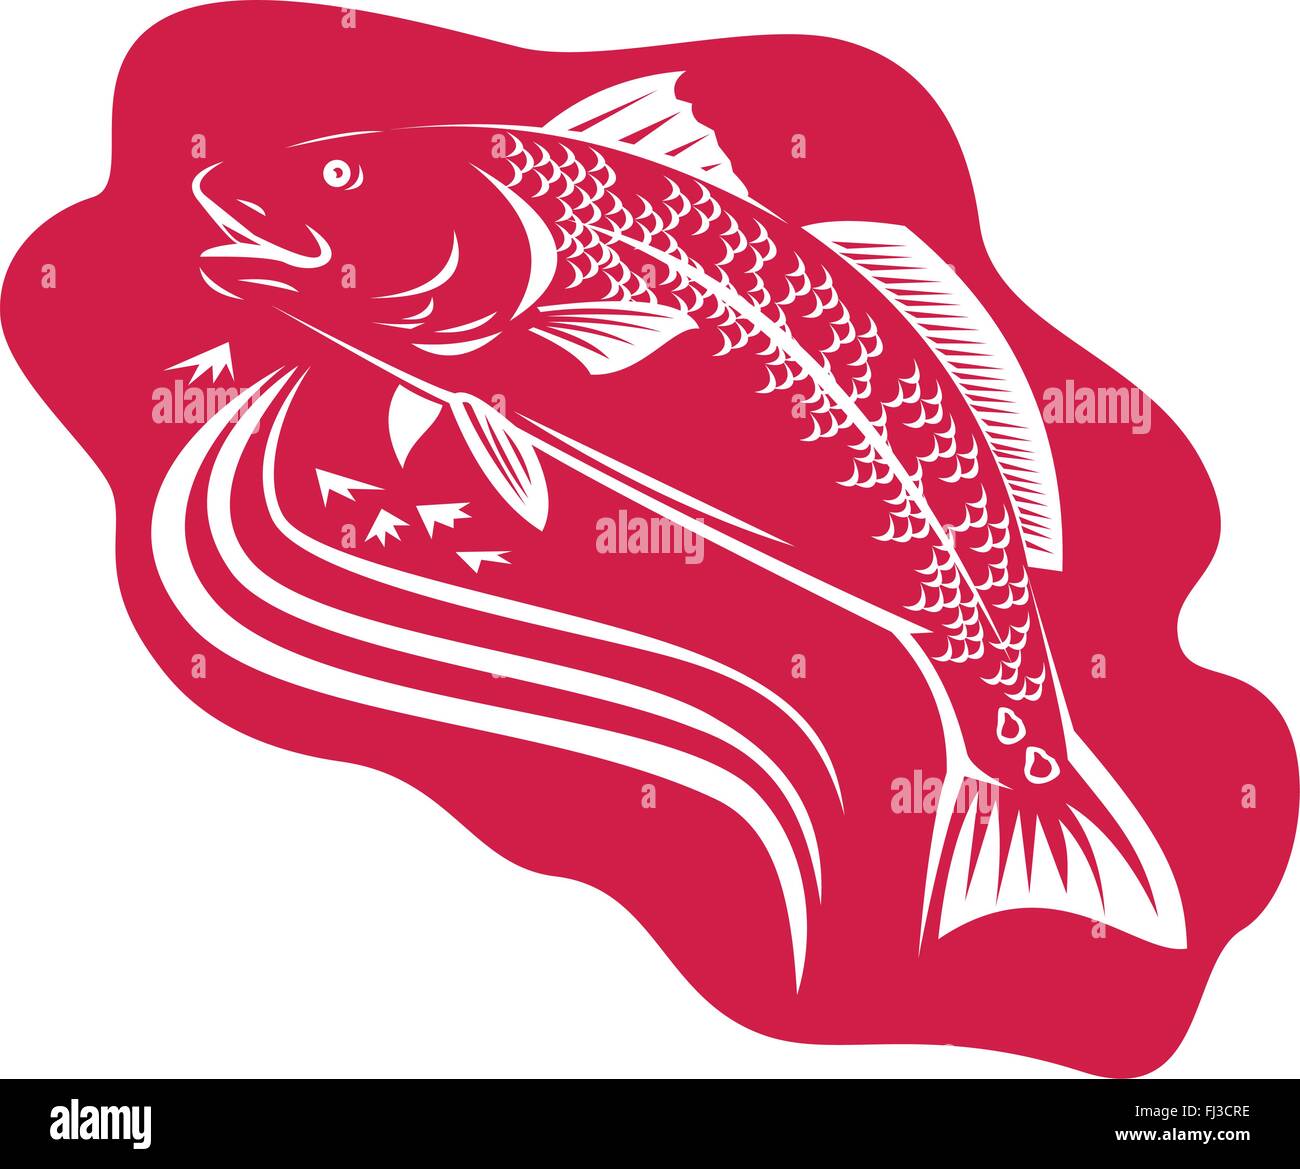 Illustrazione di un tamburo rosso spottail bass pesce fatto rétro xilografia stile. Illustrazione Vettoriale